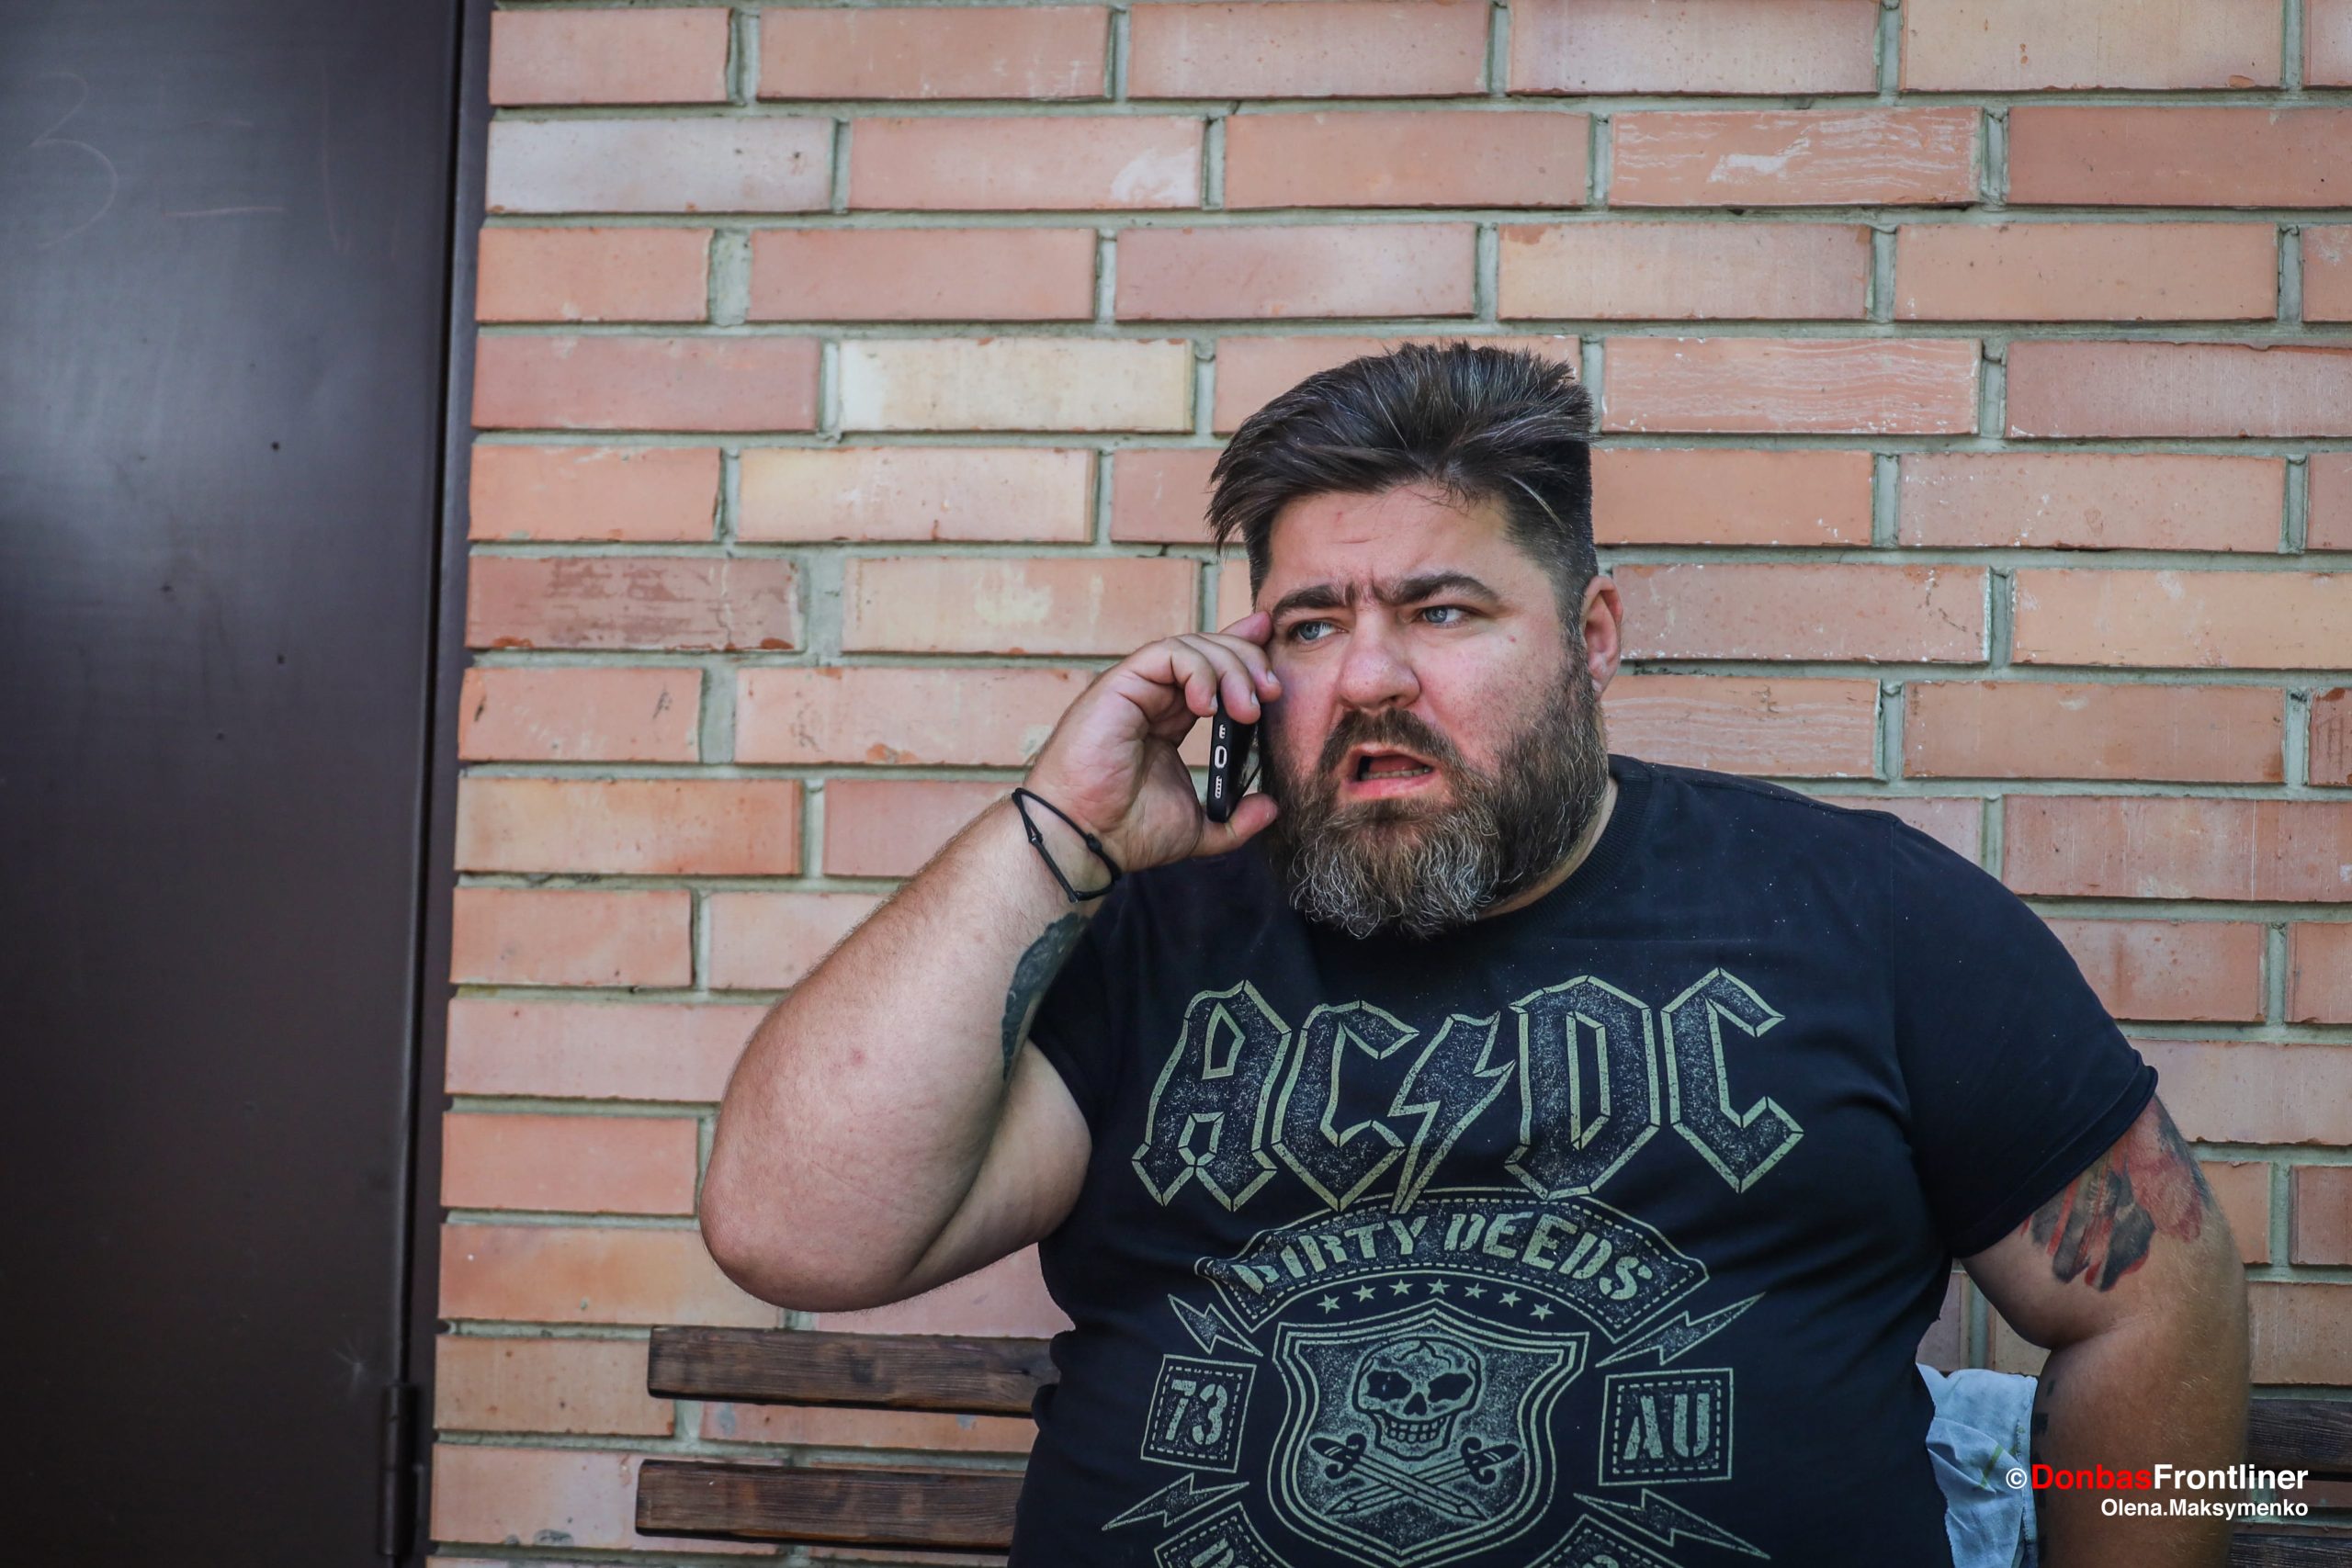 Donbas Frontliner / "Козєй" під час чергового телефонного дзвінка.